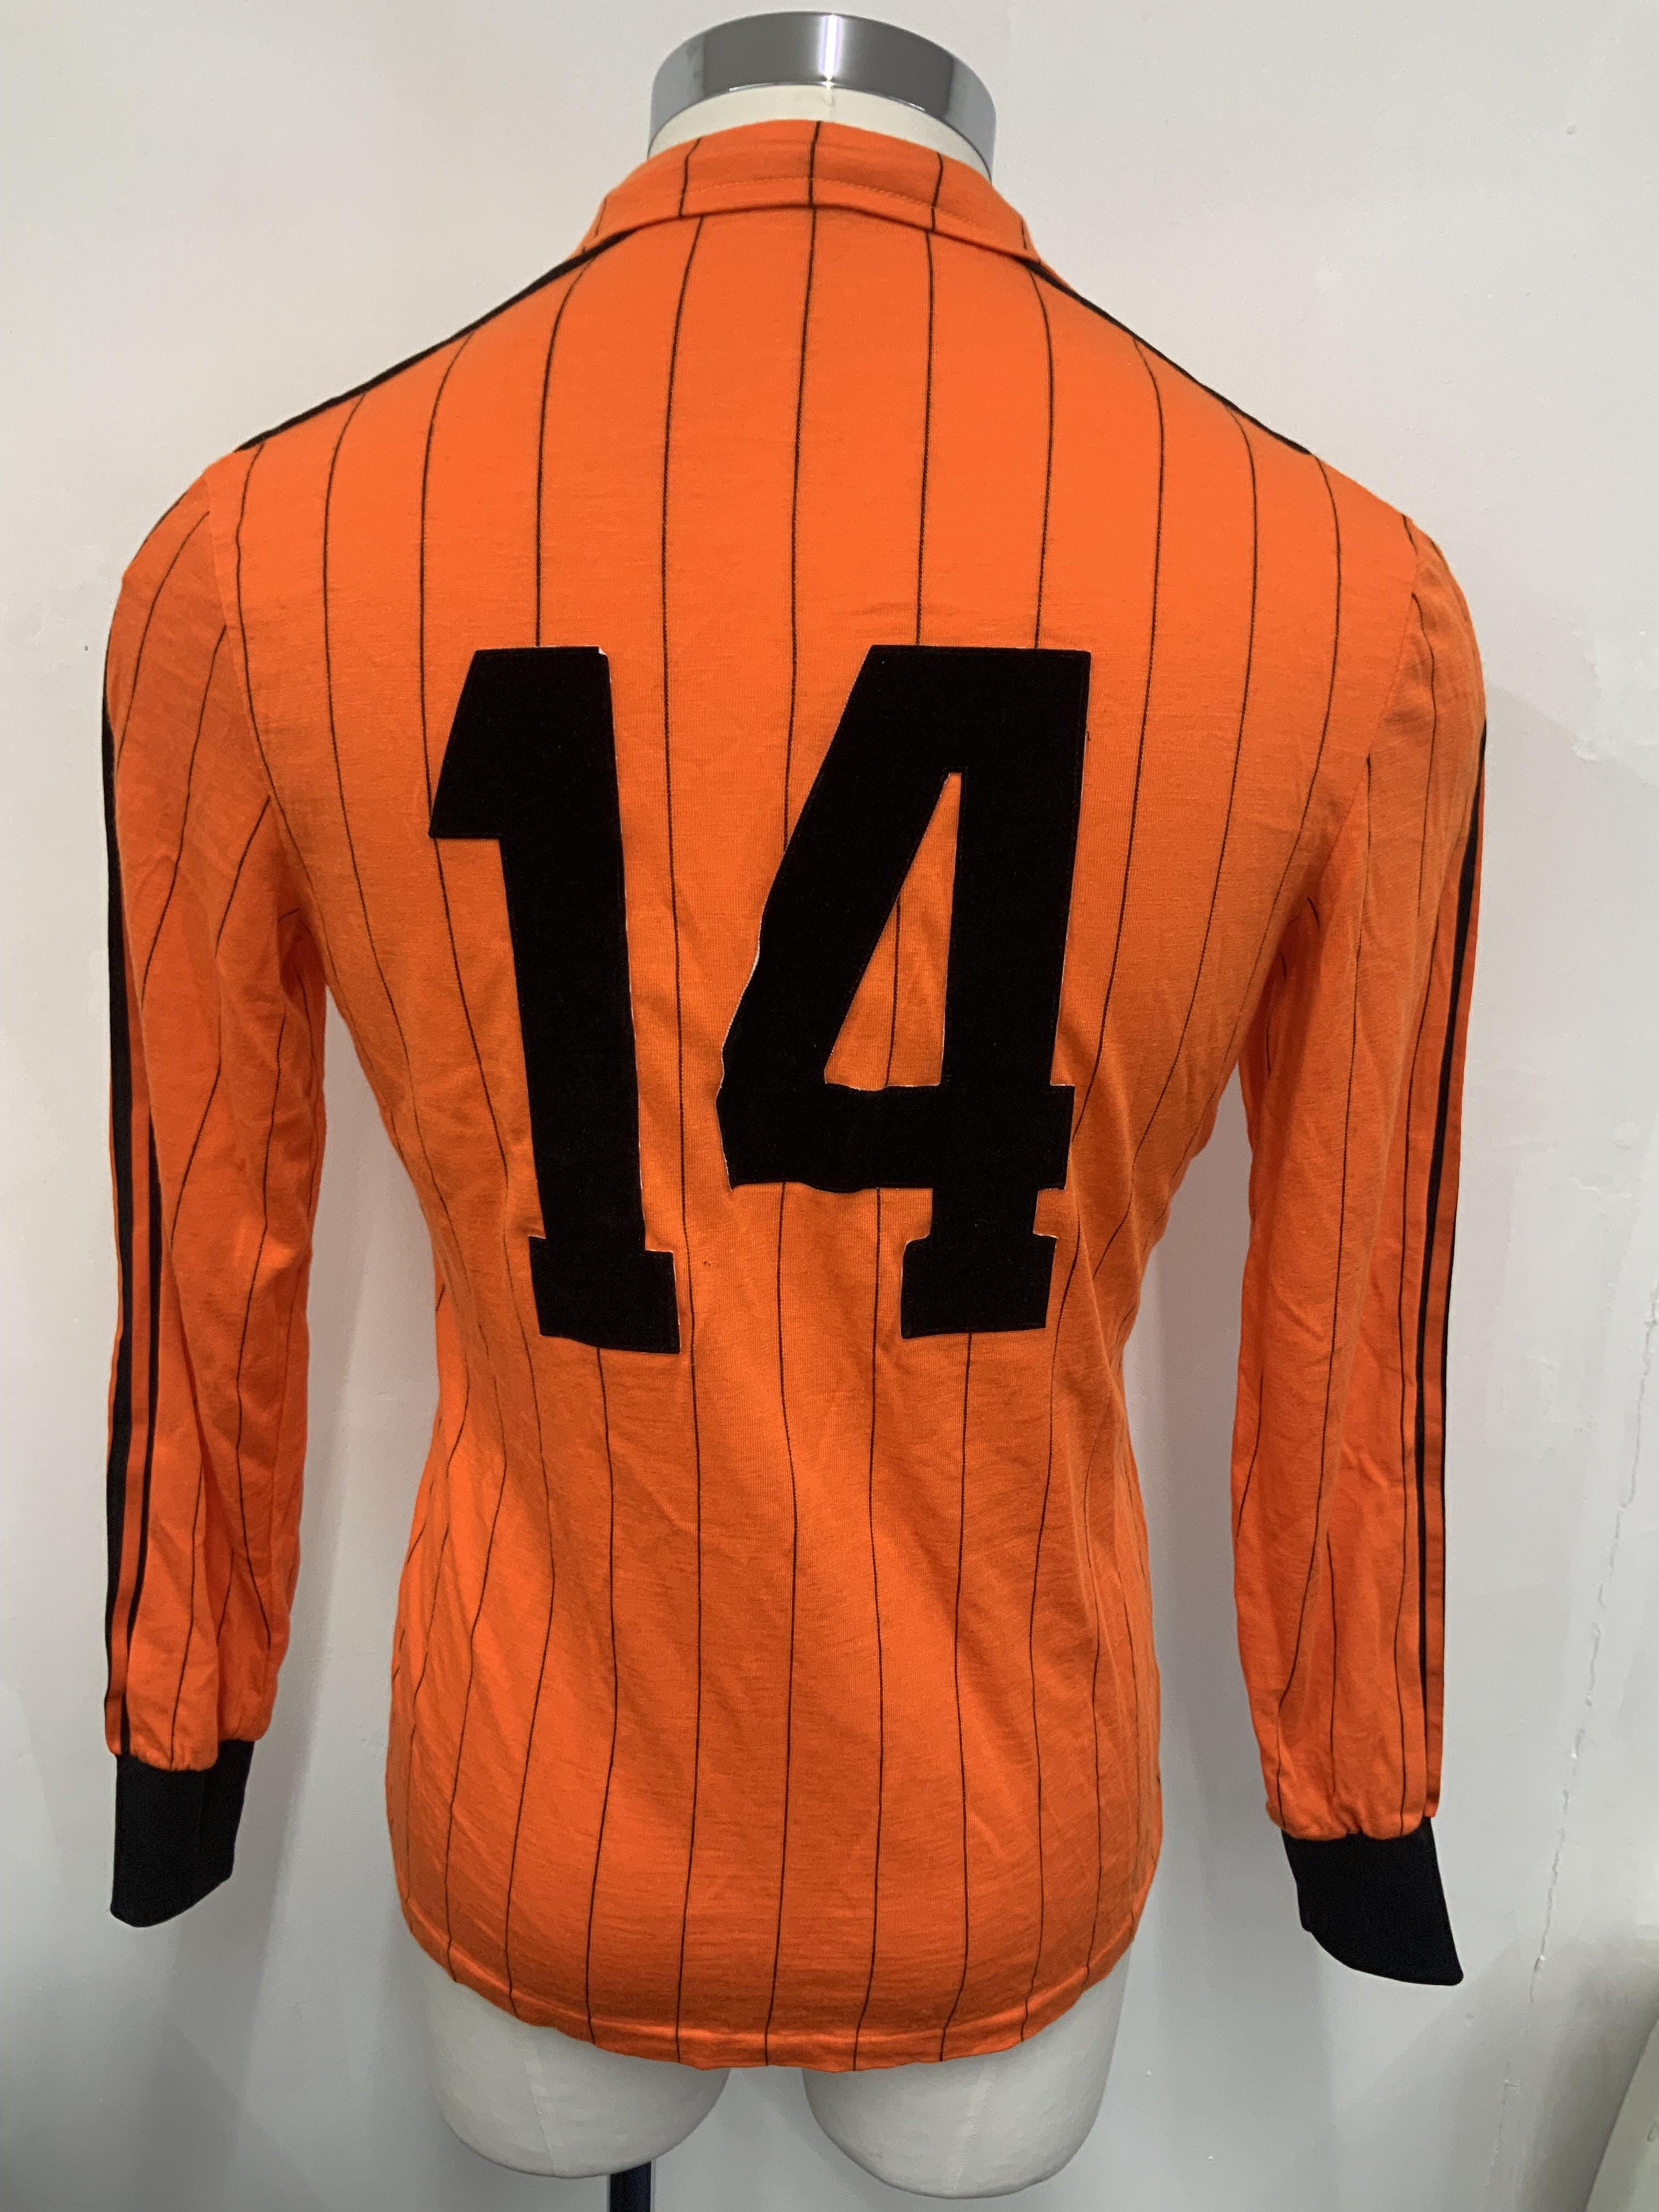 1982 Holland Netherlands Match Worn Football Shirt - Image 2 of 3